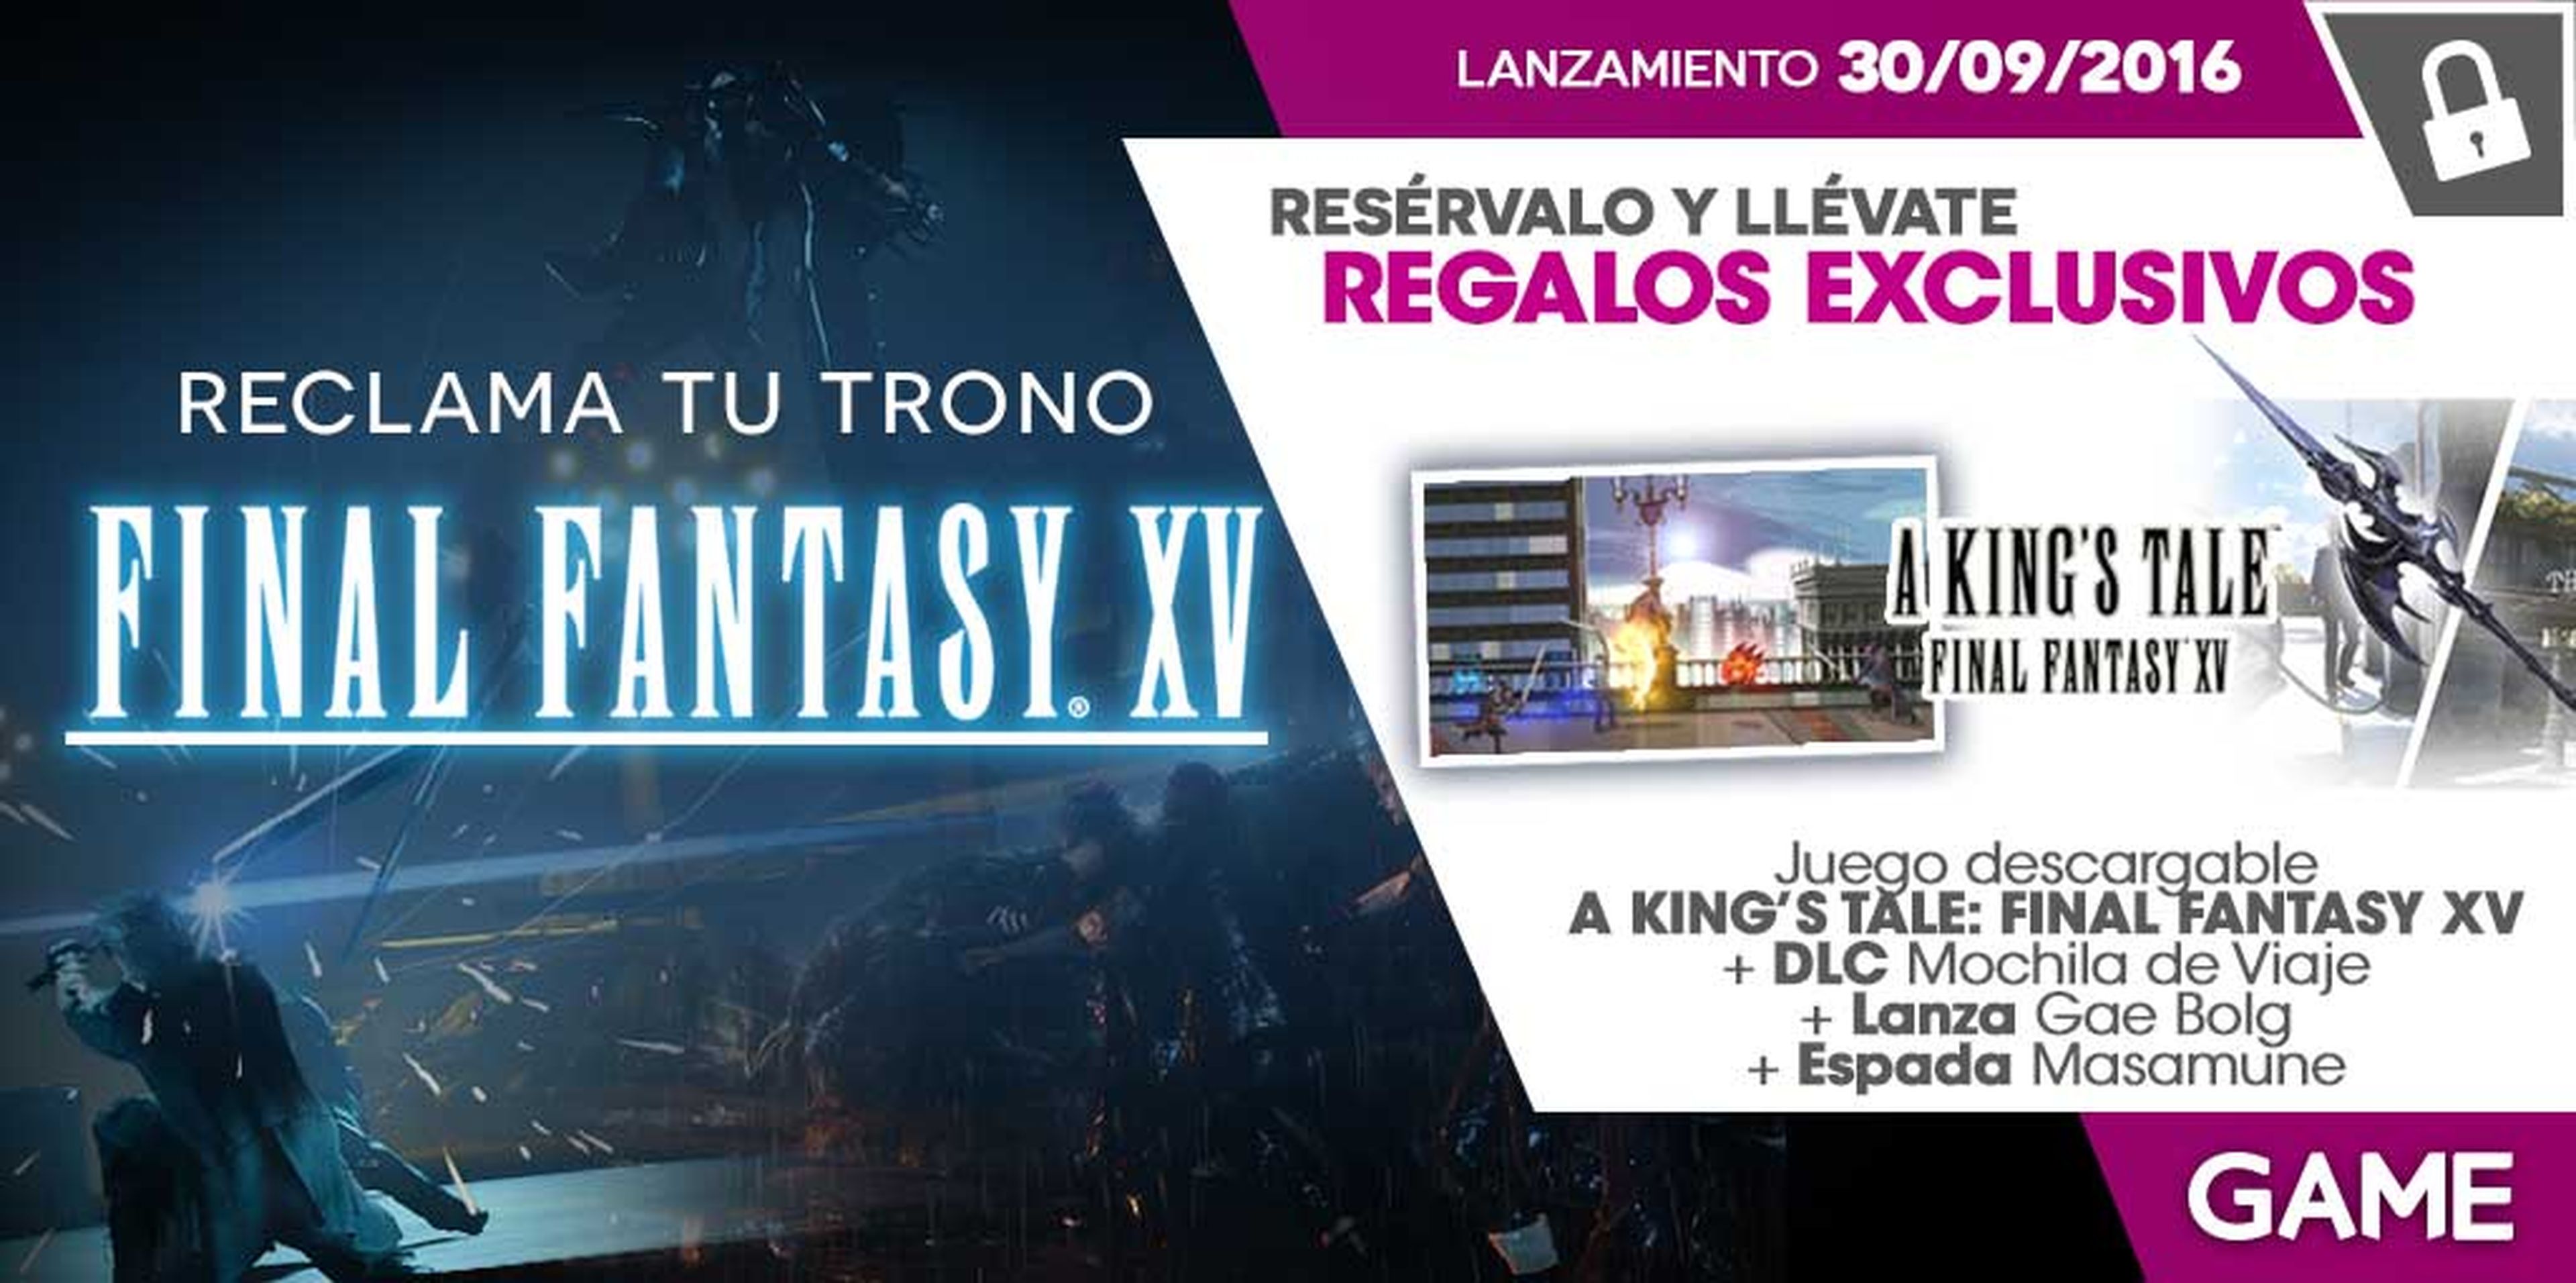 Final Fantasy XV - Regalos de reserva en GAME